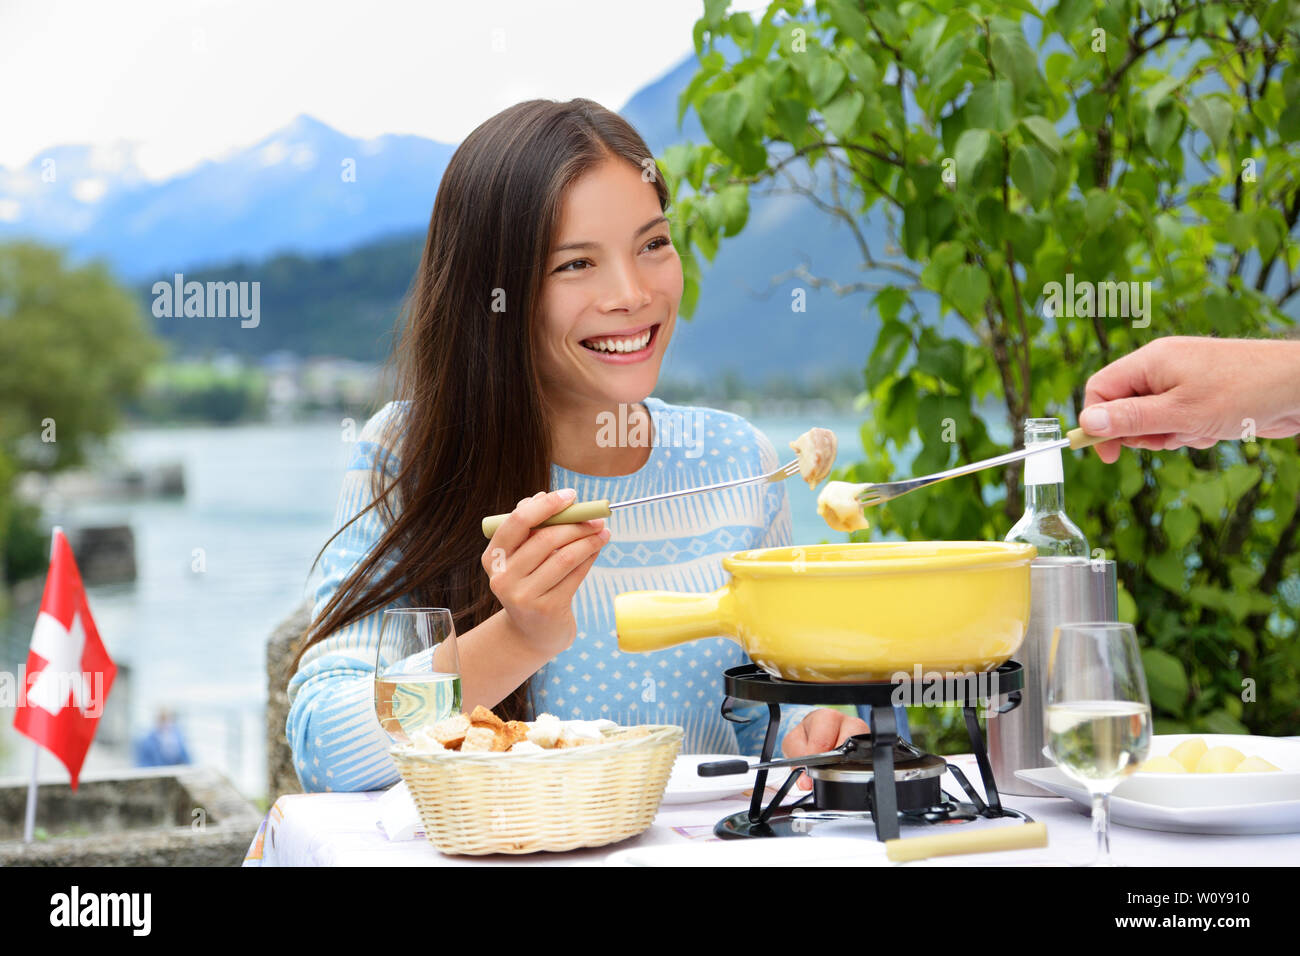 Les personnes mangeant fondue au fromage suisse en train de dîner en Suisse par le lac dans les Alpes. Femme mangeant des aliments locaux s'amusant sur les voyages en Europe. Couple romantique en plein air en été. Banque D'Images